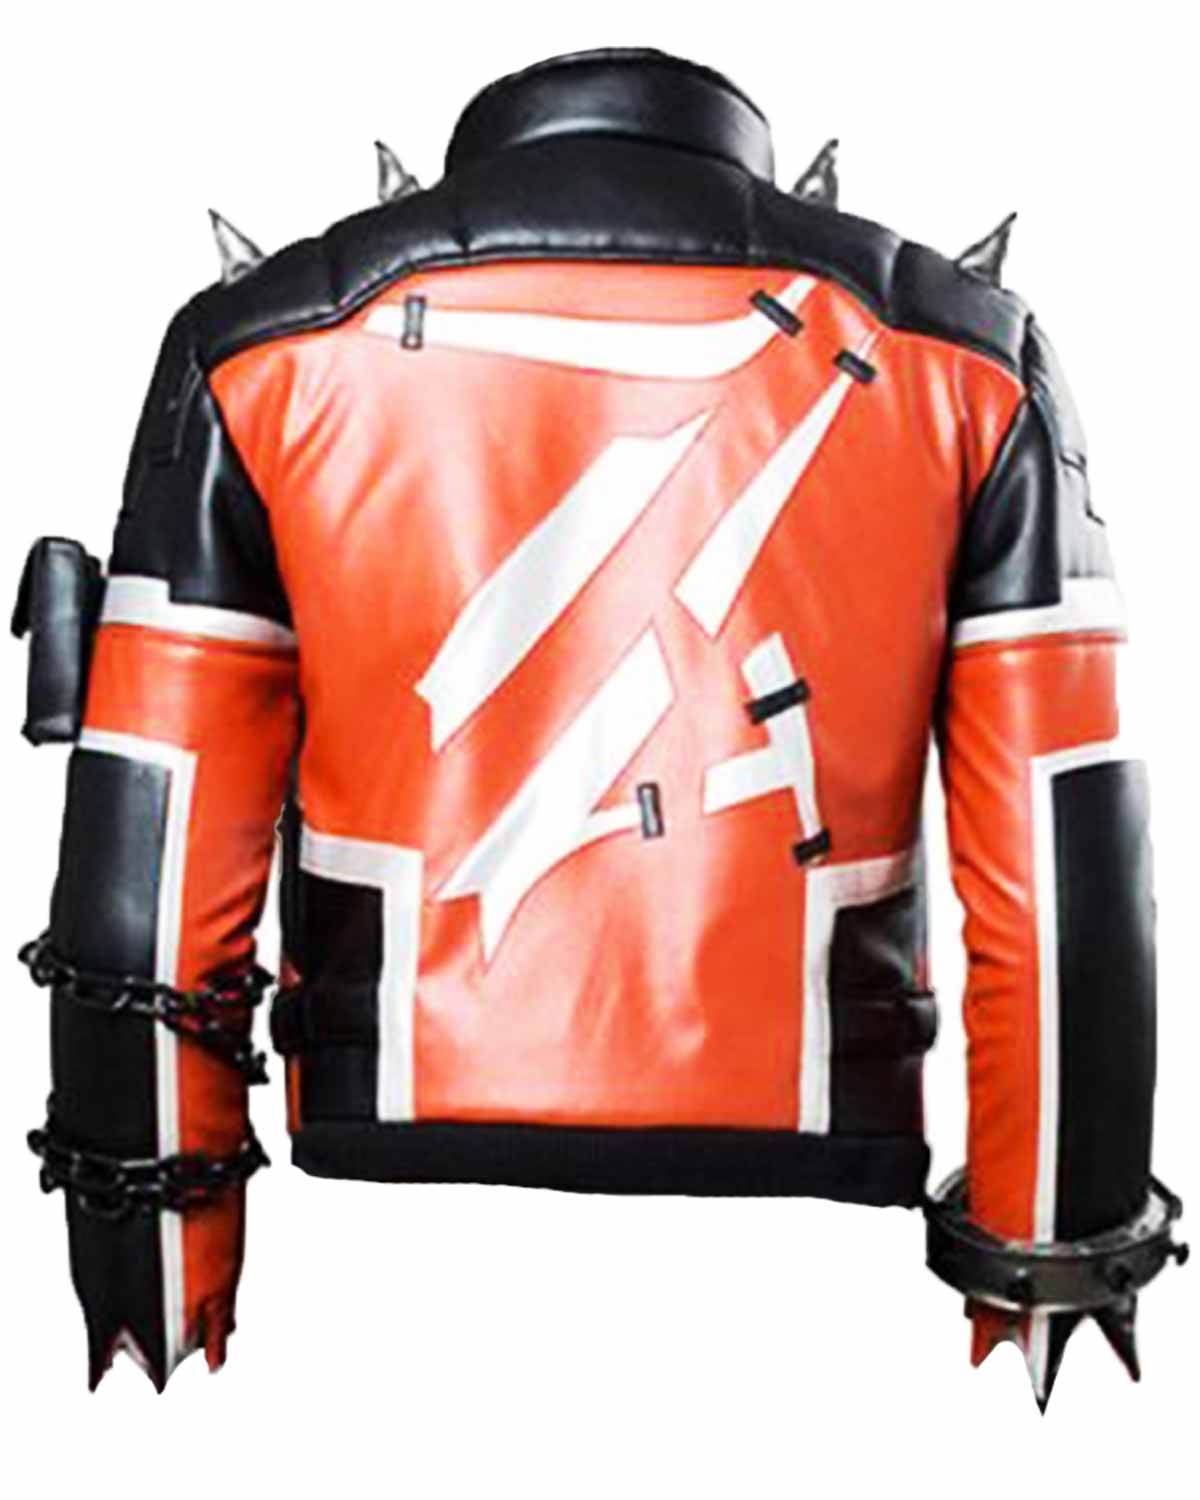 Elite Overwatch Slasher Soldier 76 Halloween Jacket